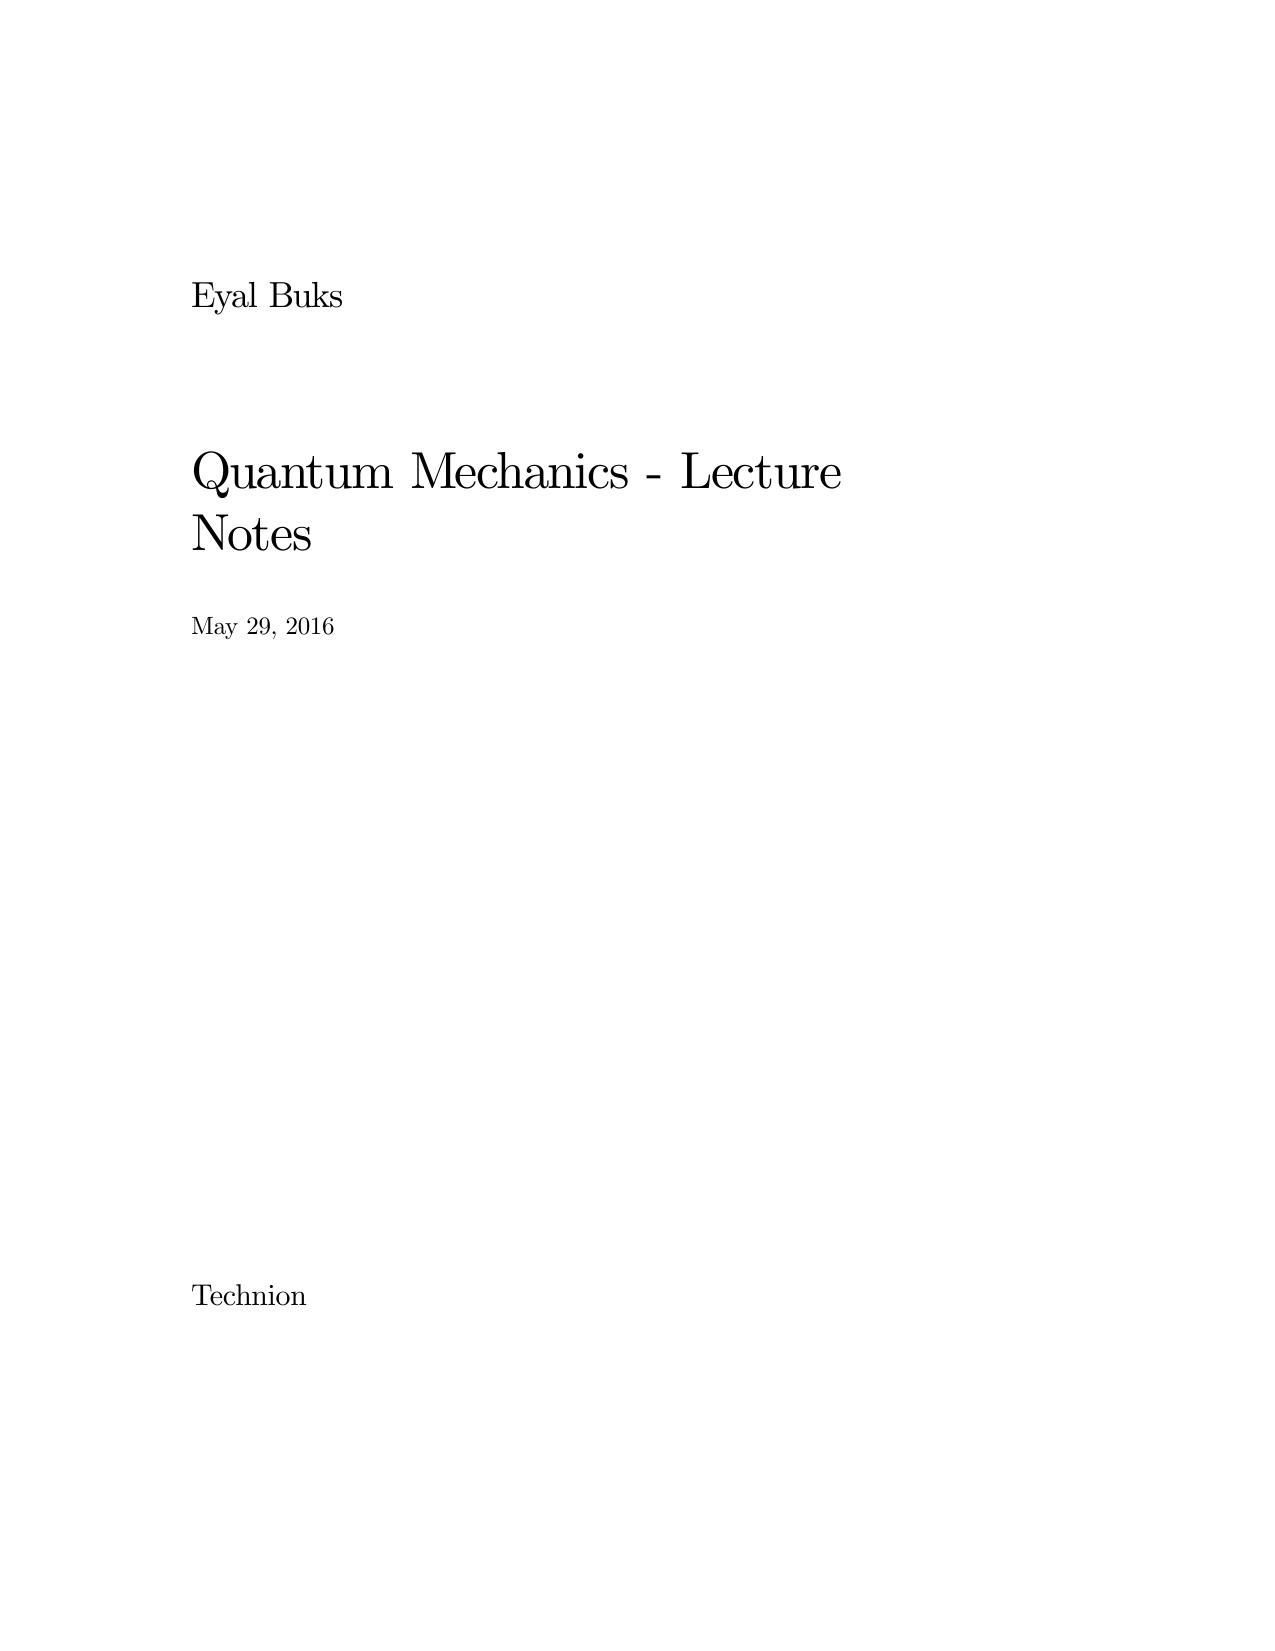 qm_lecture_notes.dvi